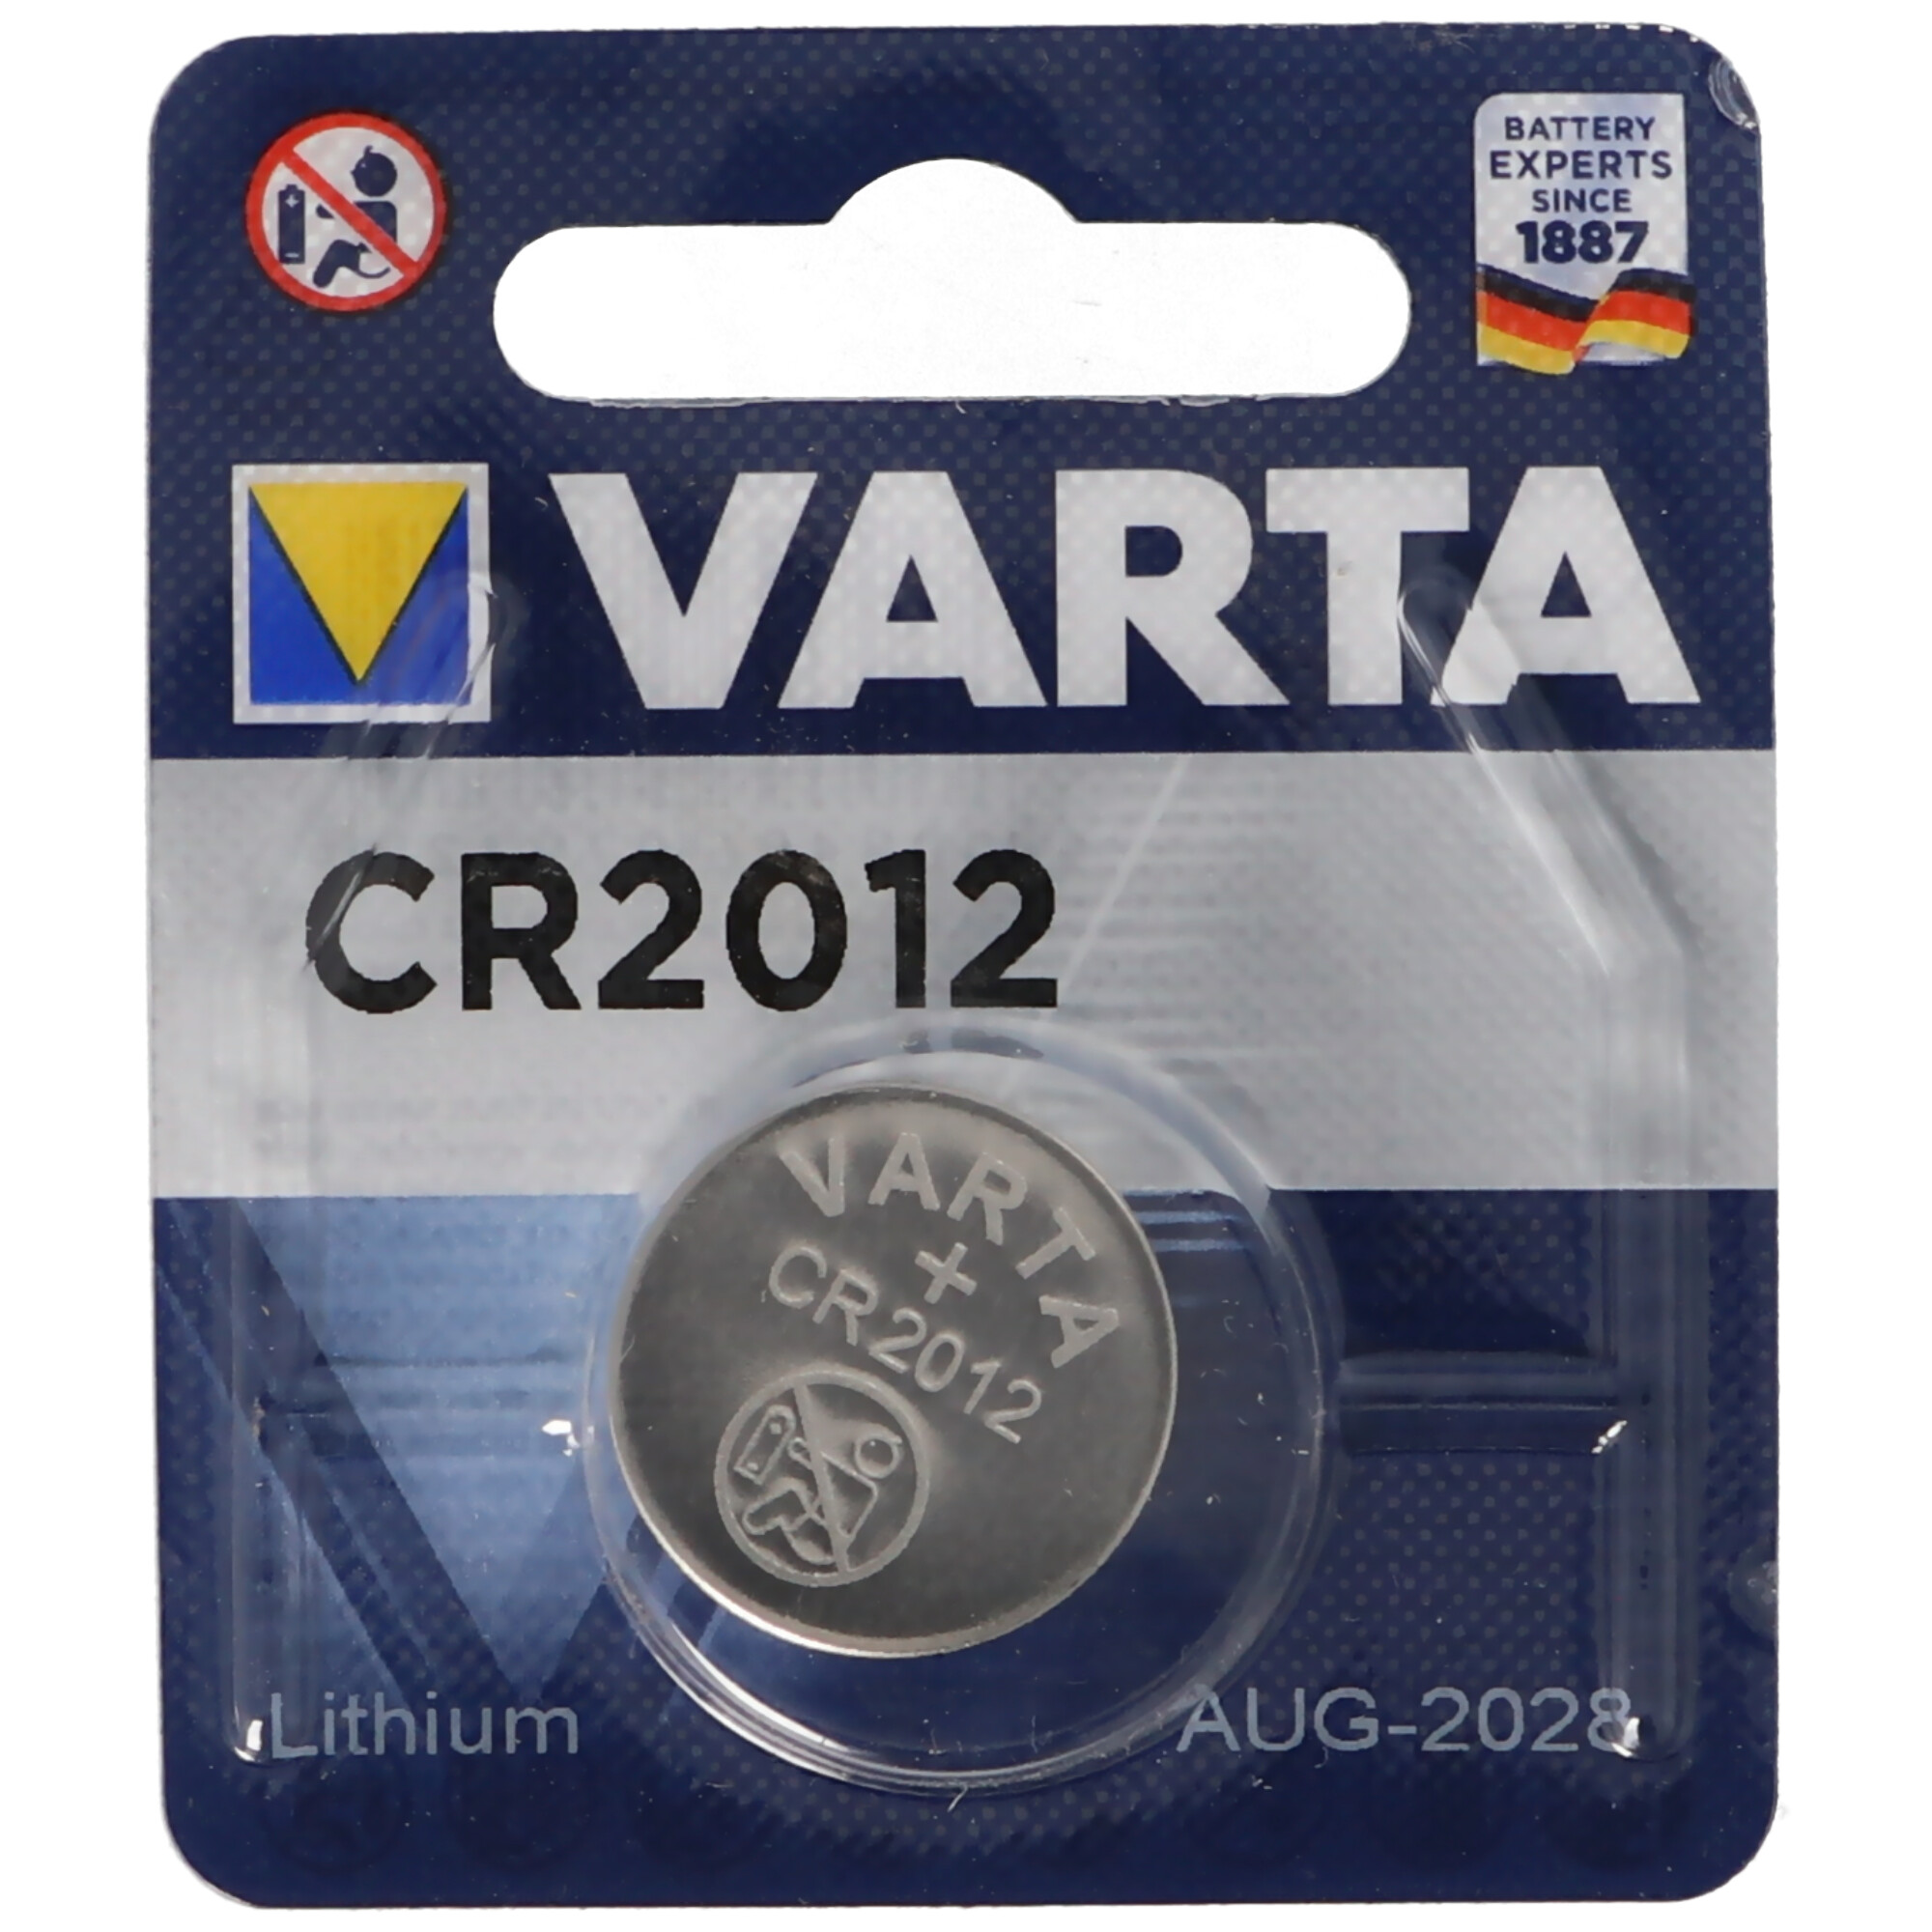 Marken Knopfzelle CR2012 Lithium Batterie